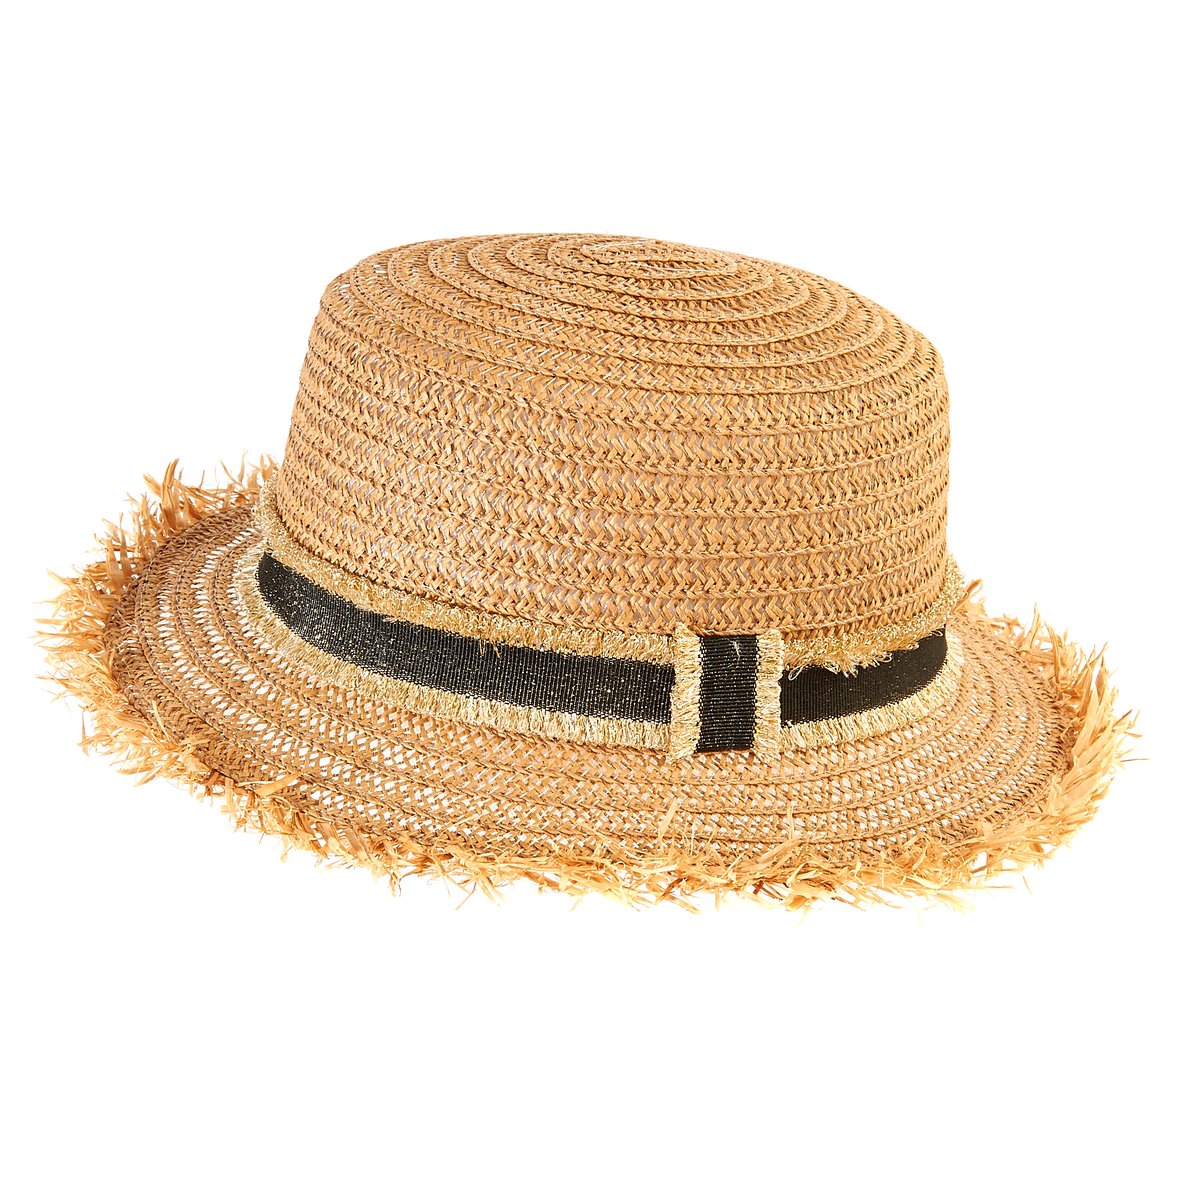 Соломенная шляпа 5. Соломенная шляпа Джейн Эйр. Outventure шляпа соломенная. Черная соломенная шляпа Max Mara. Соломенная шляпа Hanna Anderson.